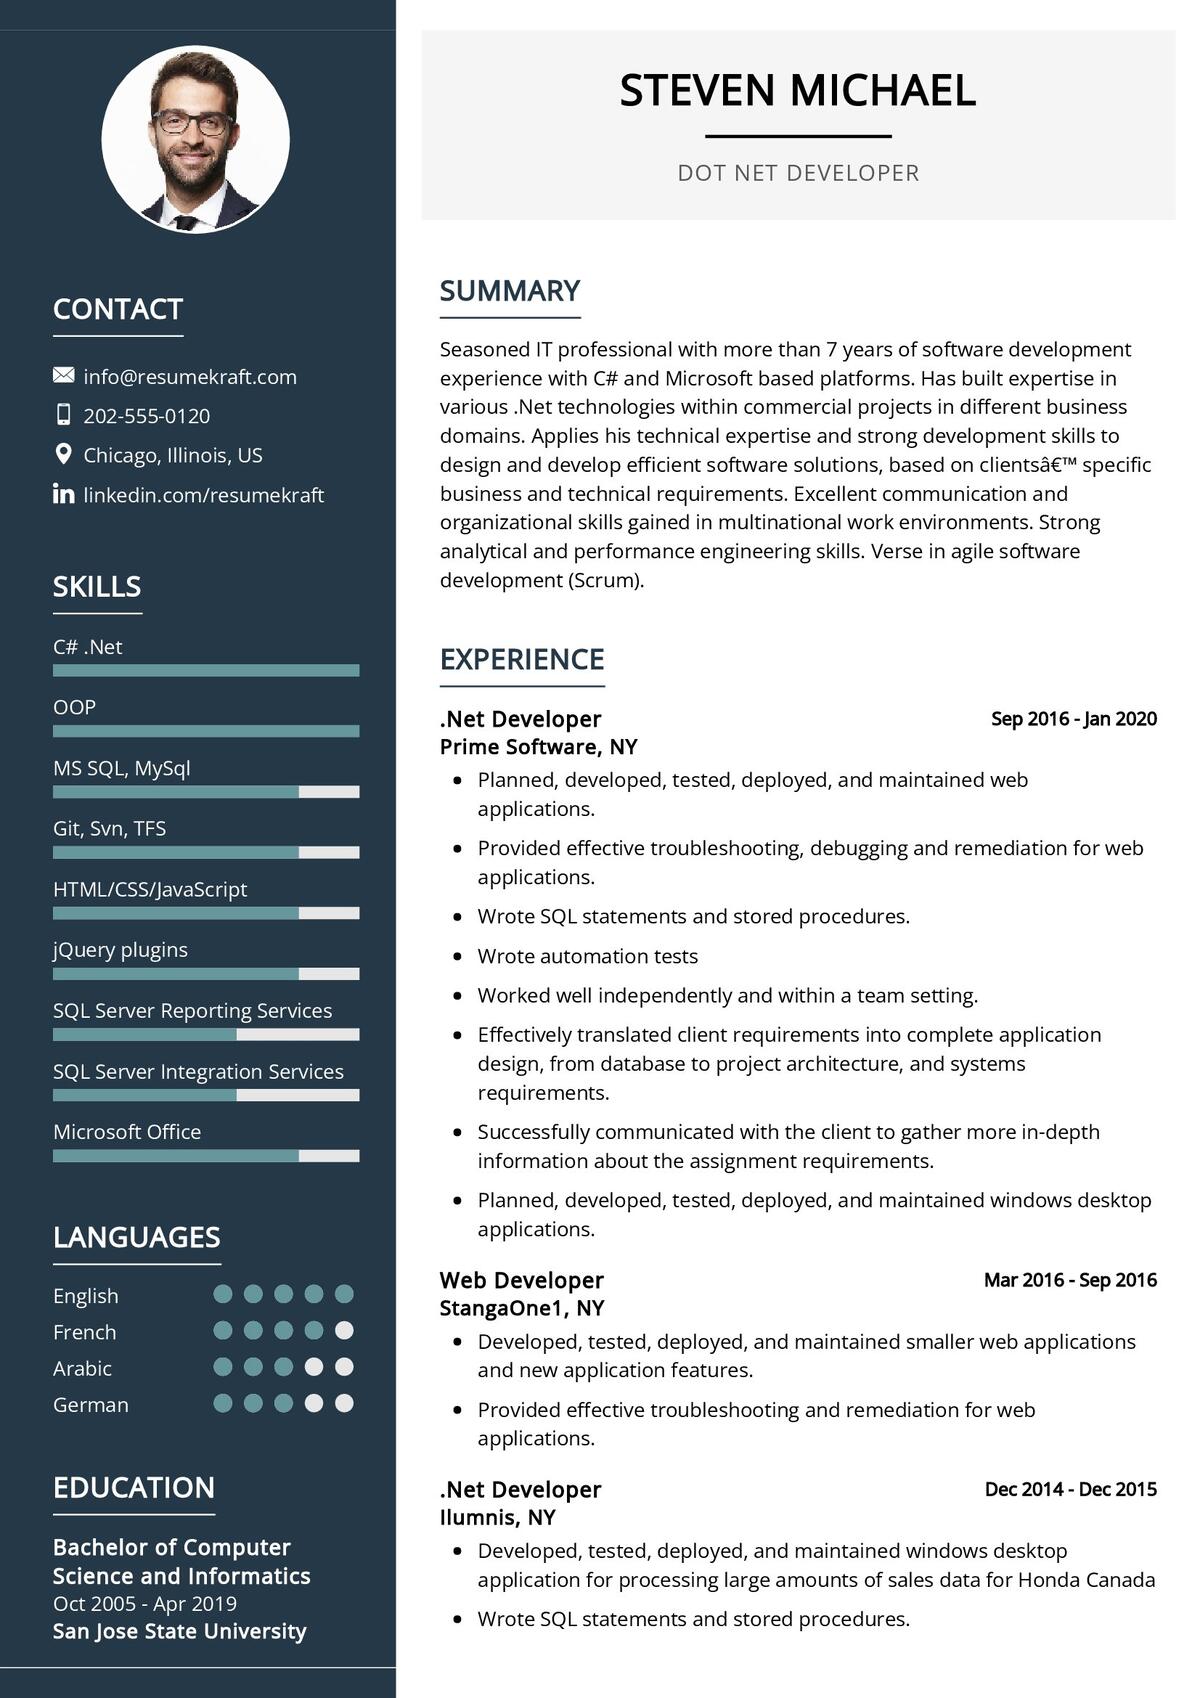 sample resume for dot net developer experience 10 years